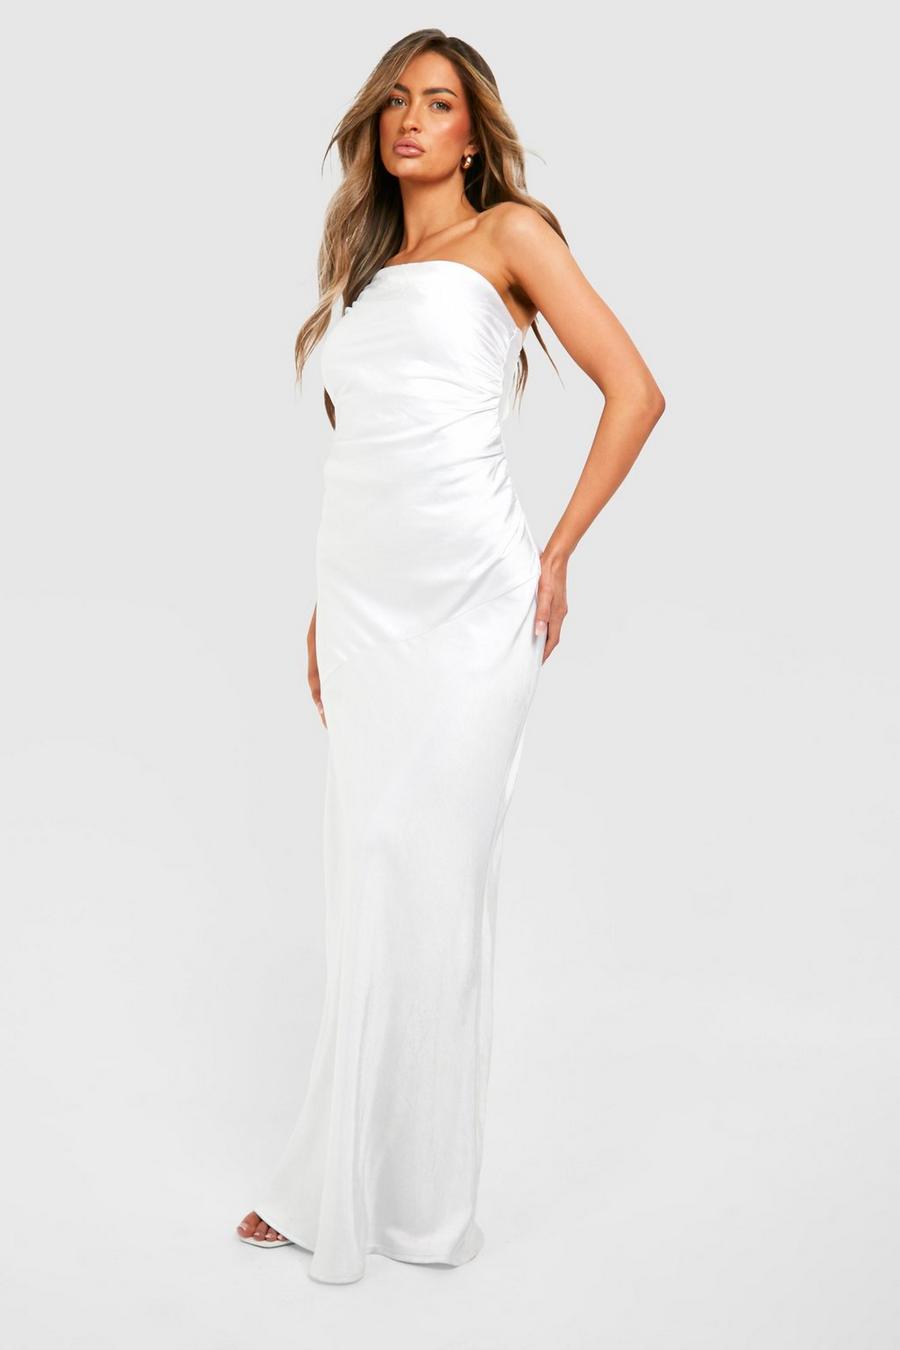 White Bridesmaid Satin Strappy Asymmetric Maxi Dress